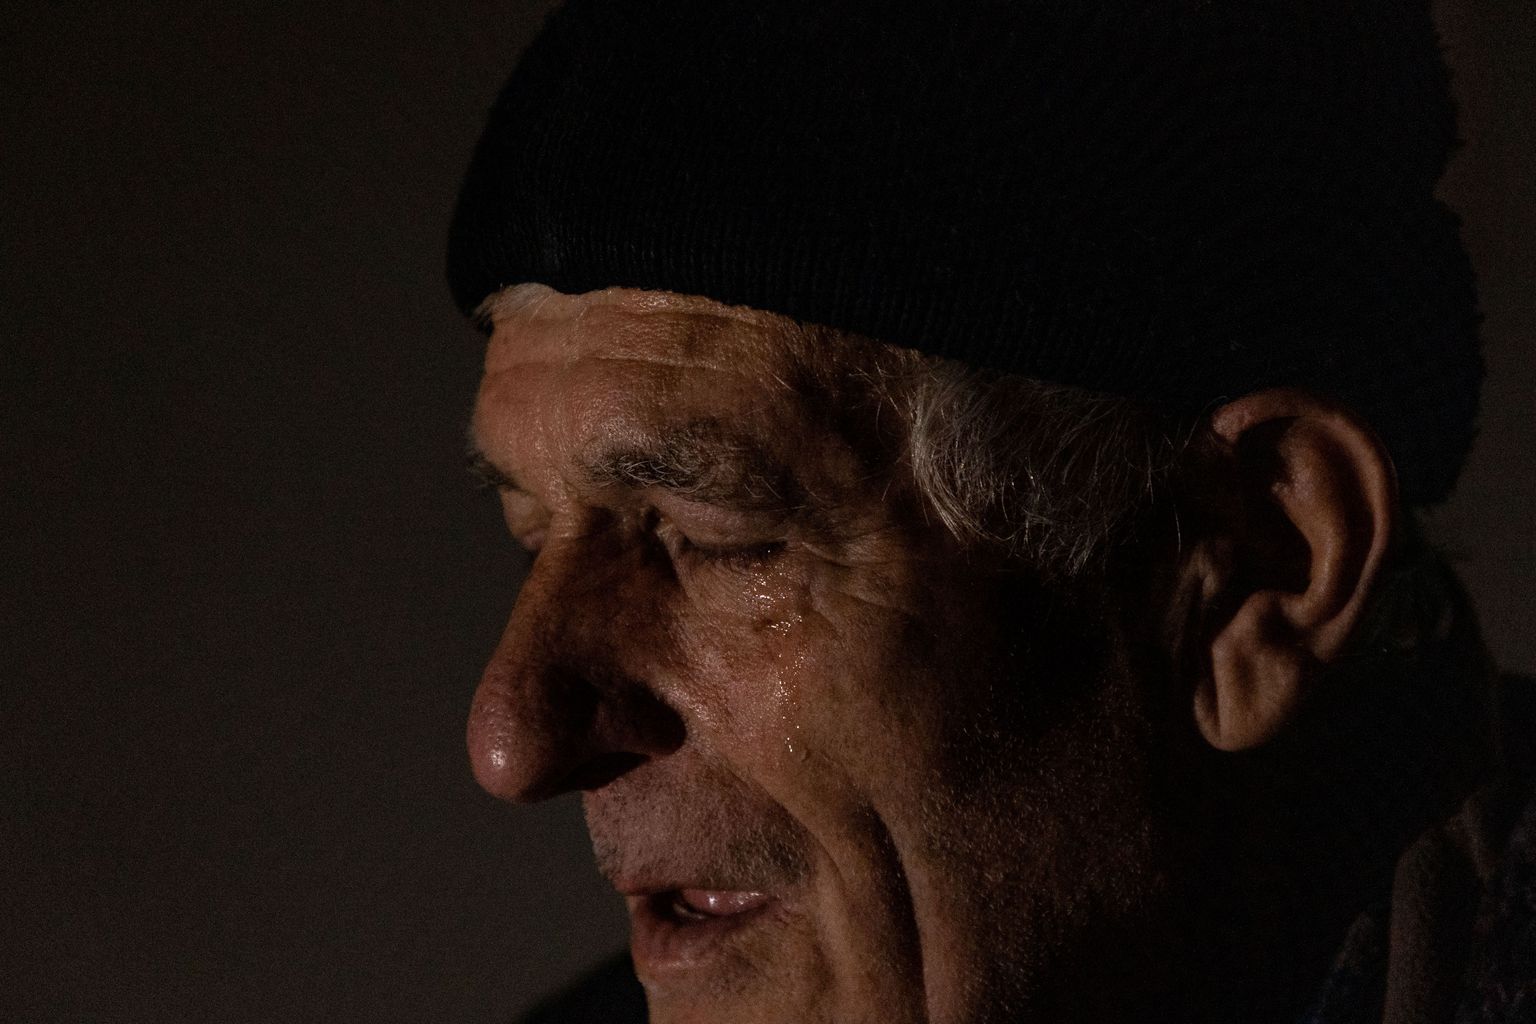 У Юрия, который уже почти год живет в подвале в городе Великая Новоселка, слезы наворачиваются на глаза, когда он думает о своих внуках, живущих в России.